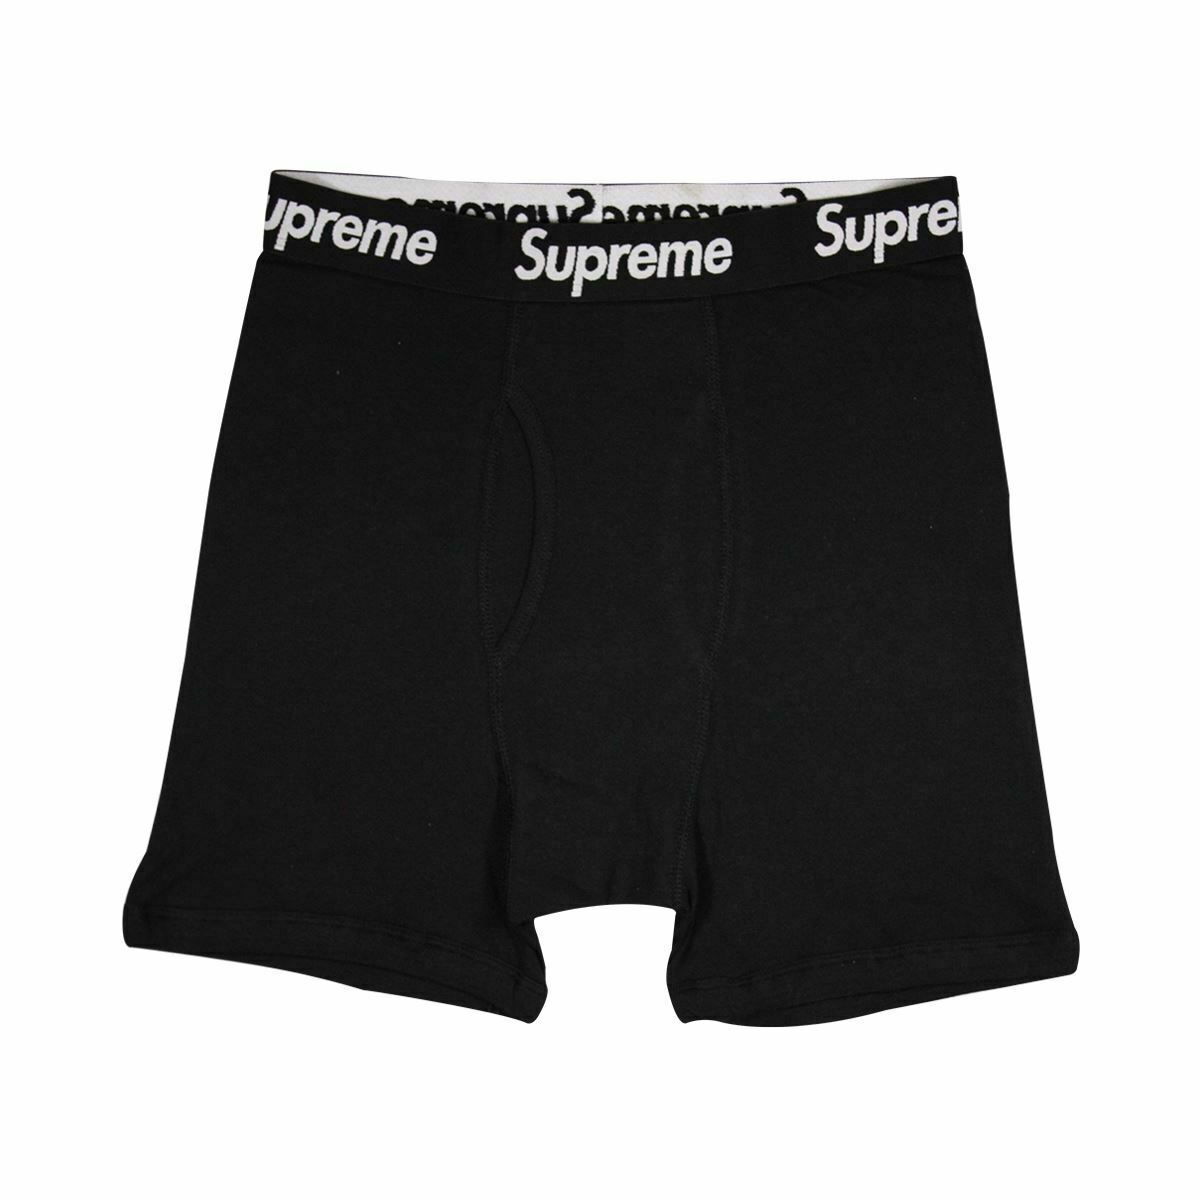 Supreme x Hanes Men's 100% Authentic Single Pack Black Boxer Briefs